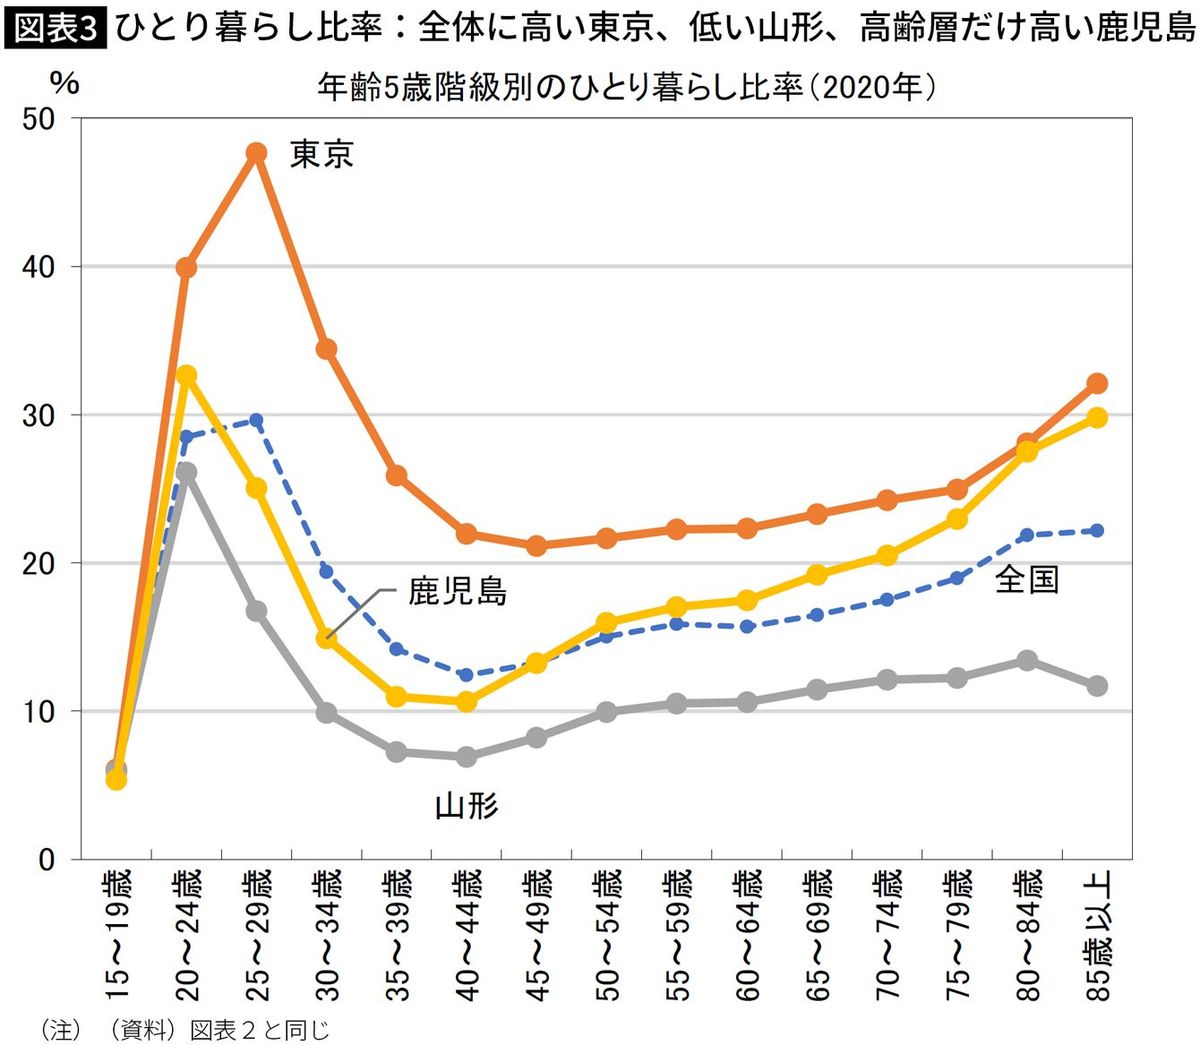 【図表】ひとり暮らし比率：全体に高い東京、低い山形、高齢層だけ高い鹿児島